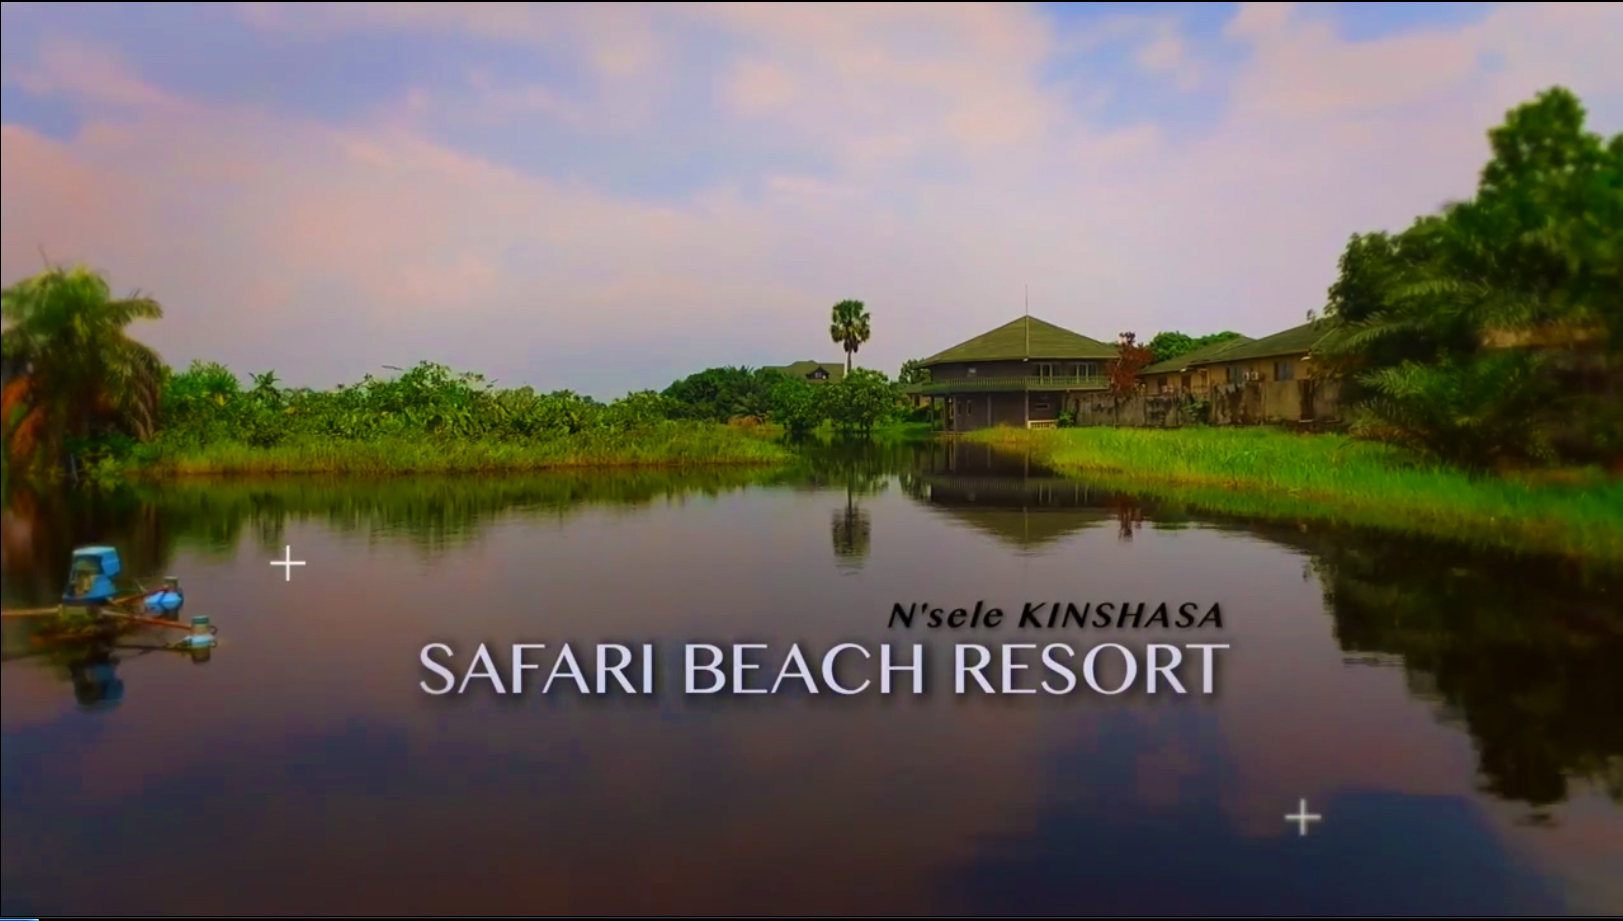 Film publicitaire en RDC au bord du fleuve Congo